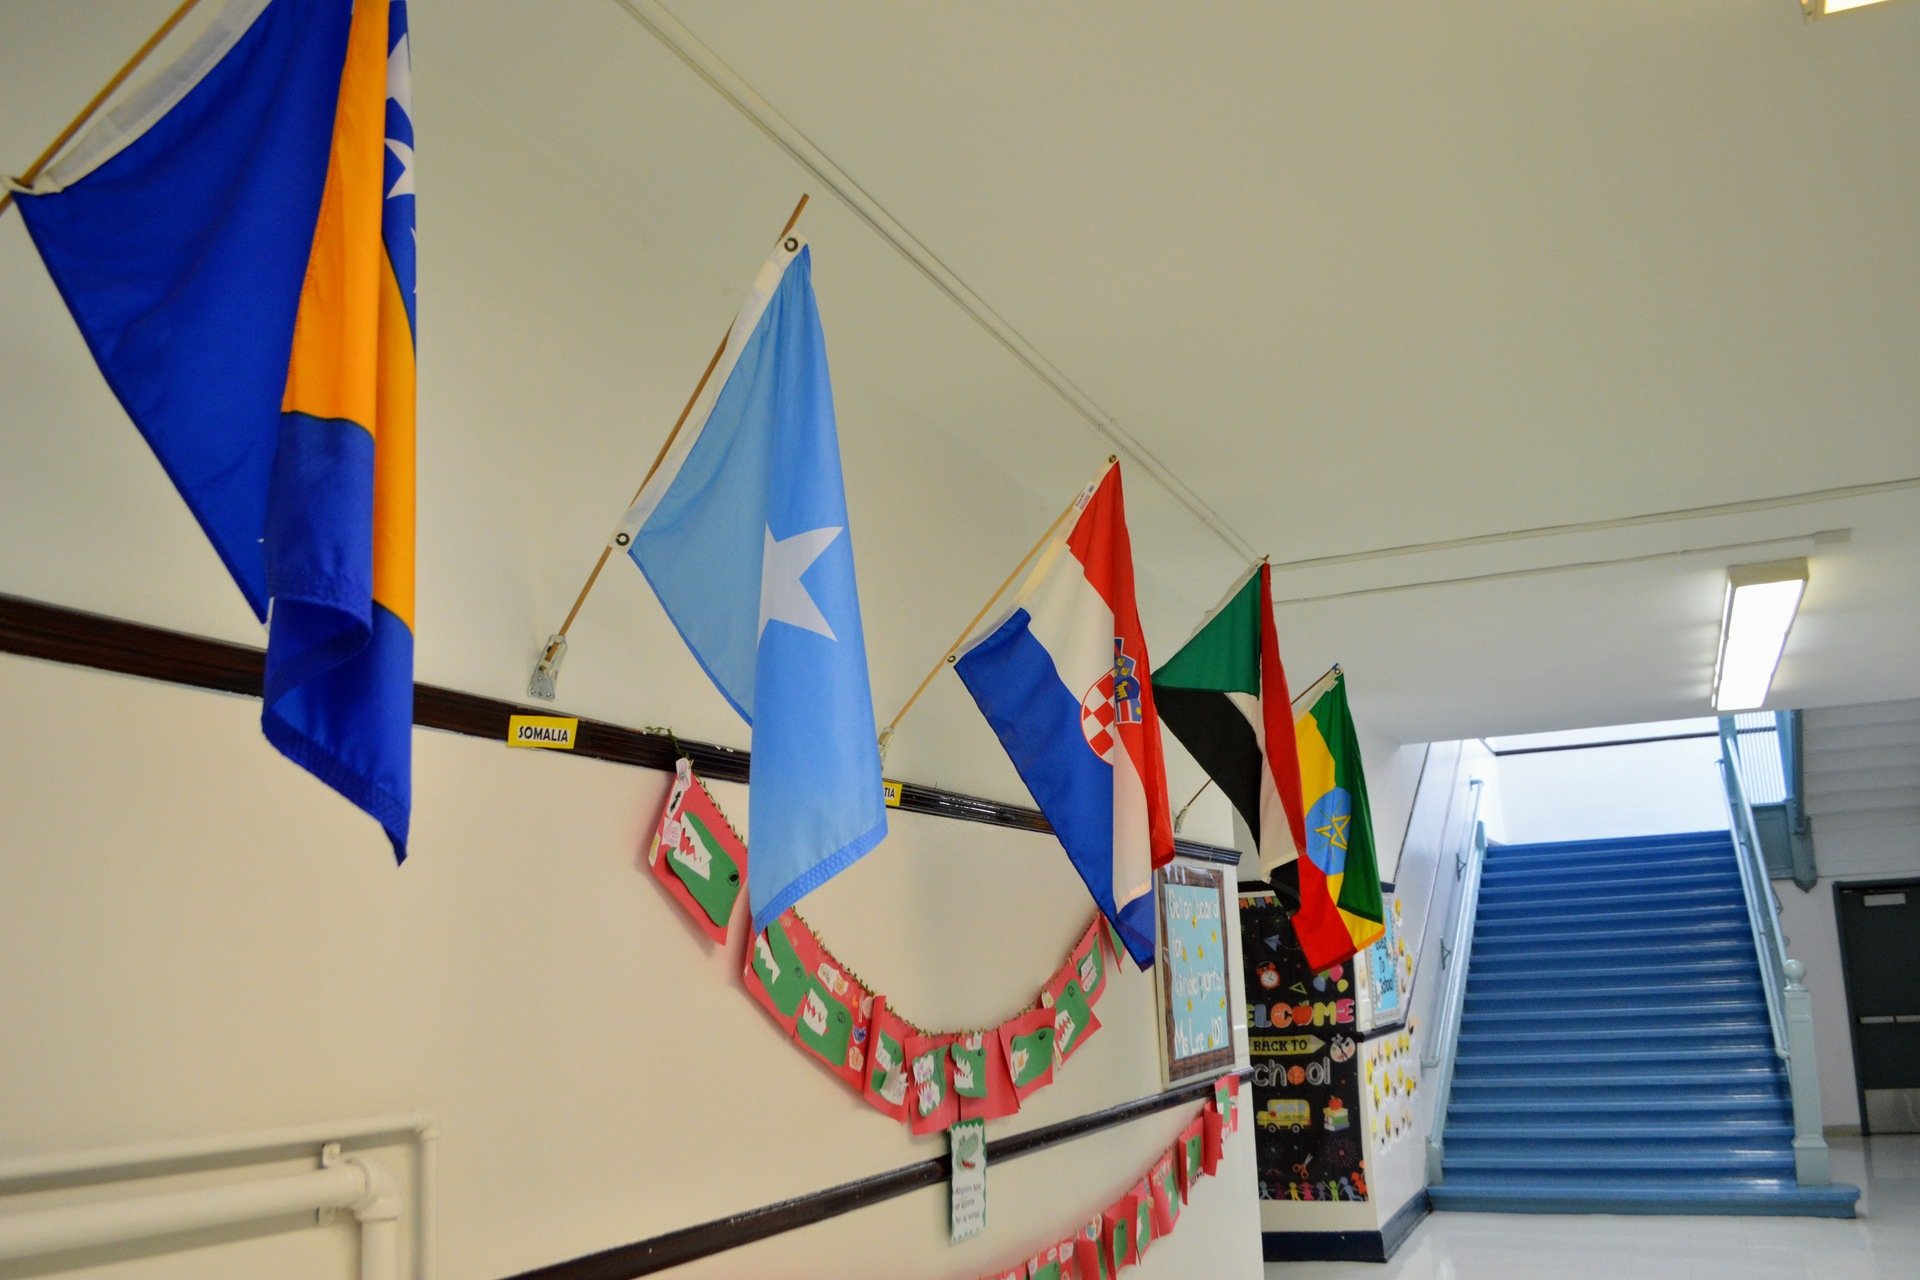 Flags in school hallway